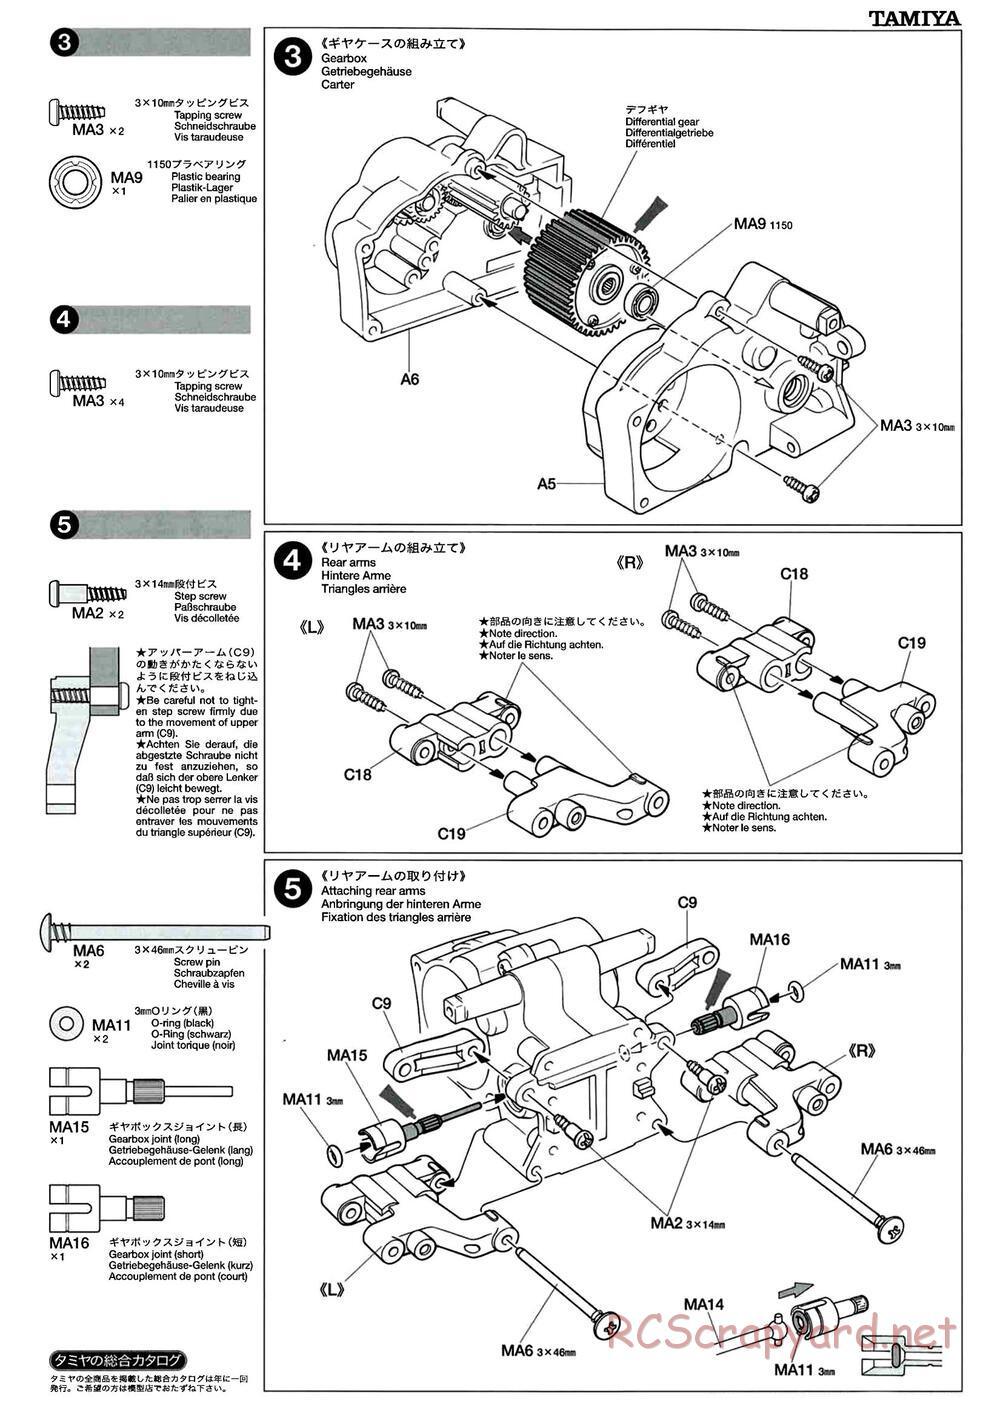 Tamiya - M-04L Chassis - Manual - Page 5